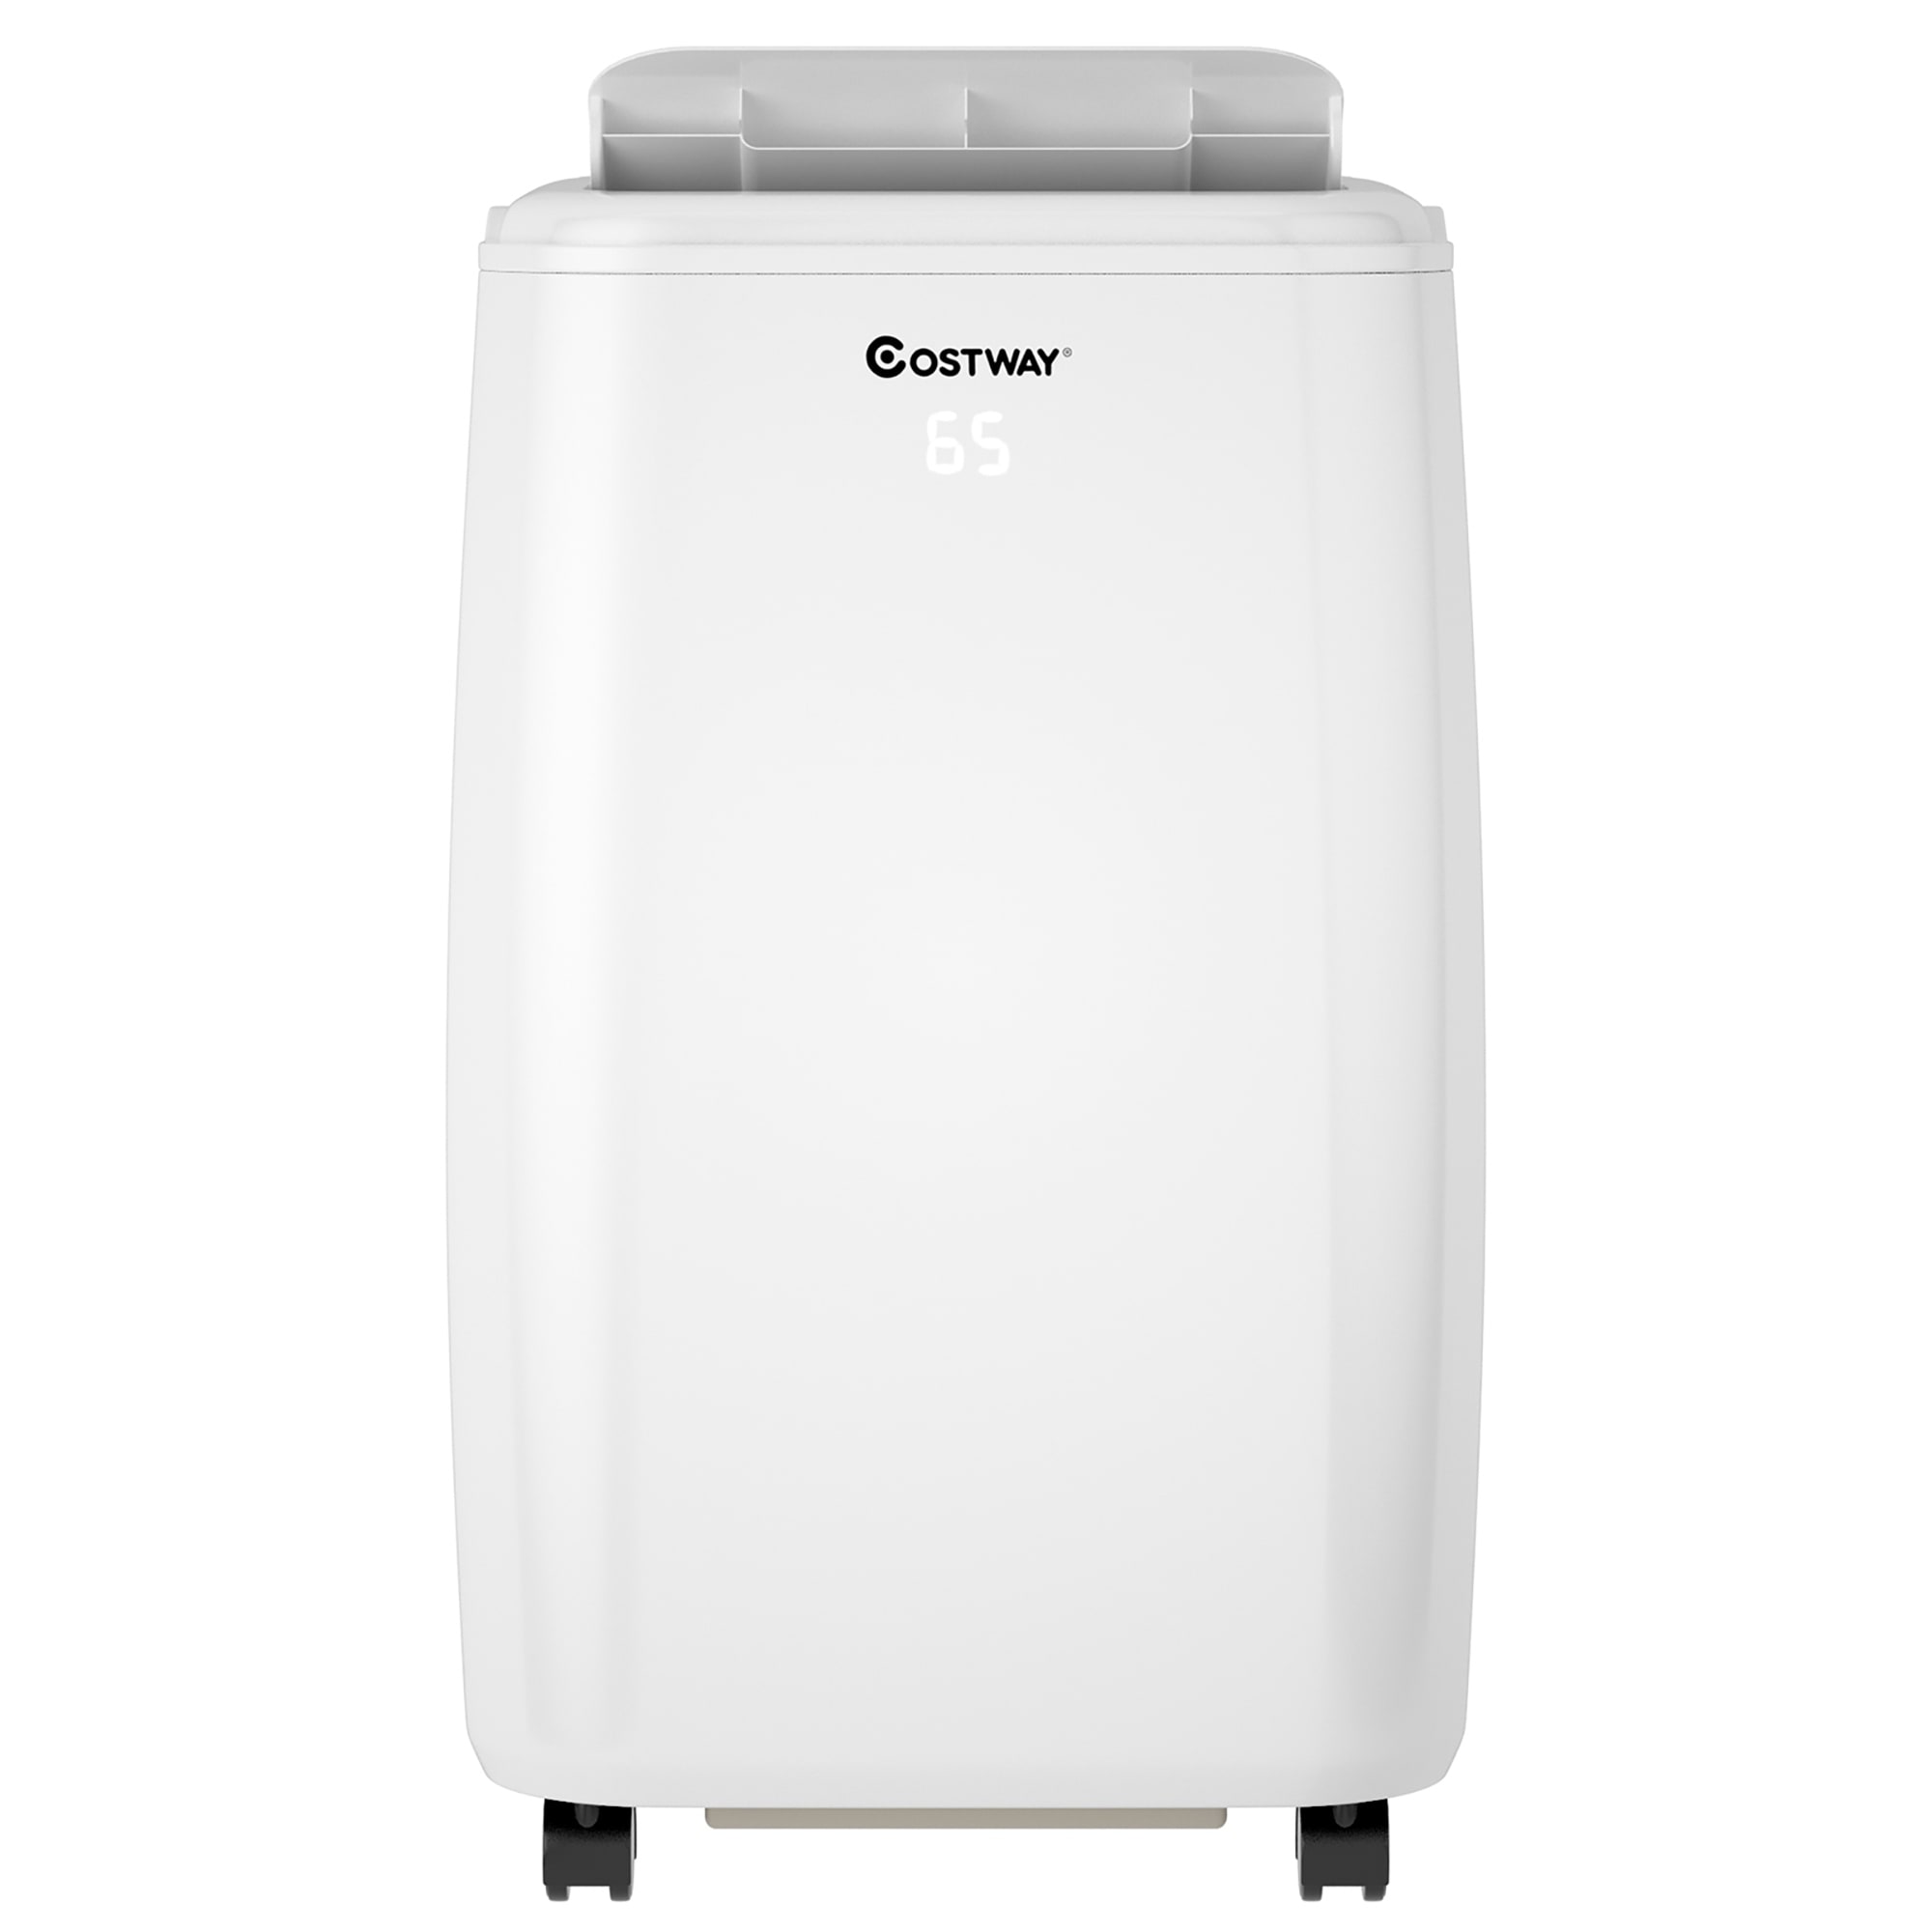 Shinco 10000 BTU Air Conditioner for 300 Square Feet & Reviews